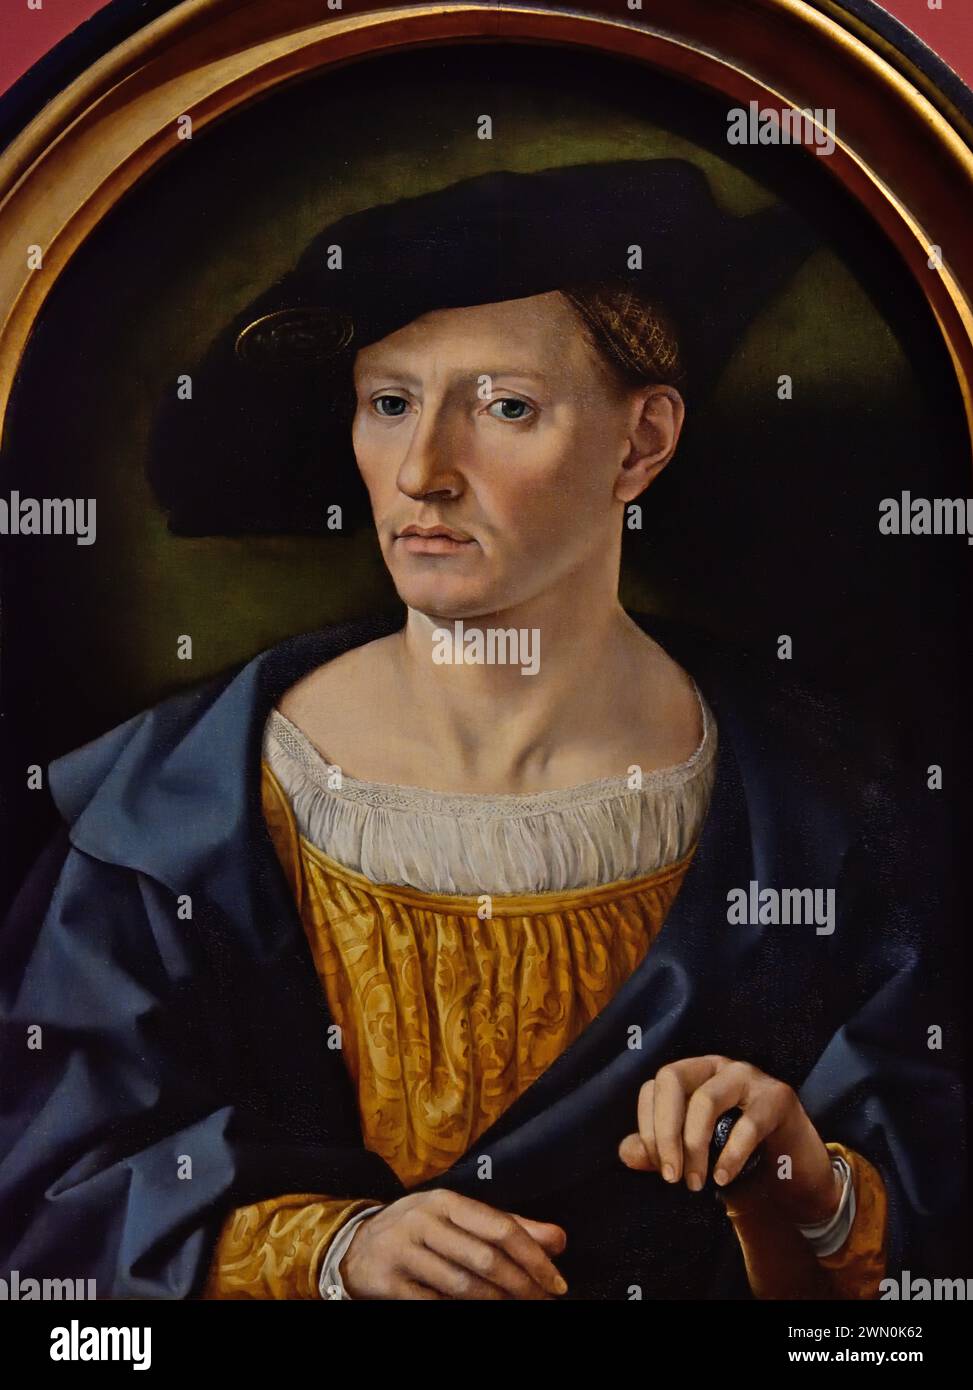 Porträt eines Mannes 1525 Jan Gossaert (Jean Gossart) 1478 – 1532 Maler aus den Niederlanden (Jan Mabuse) Belgien Belgien Belgien Niederlande Stockfoto